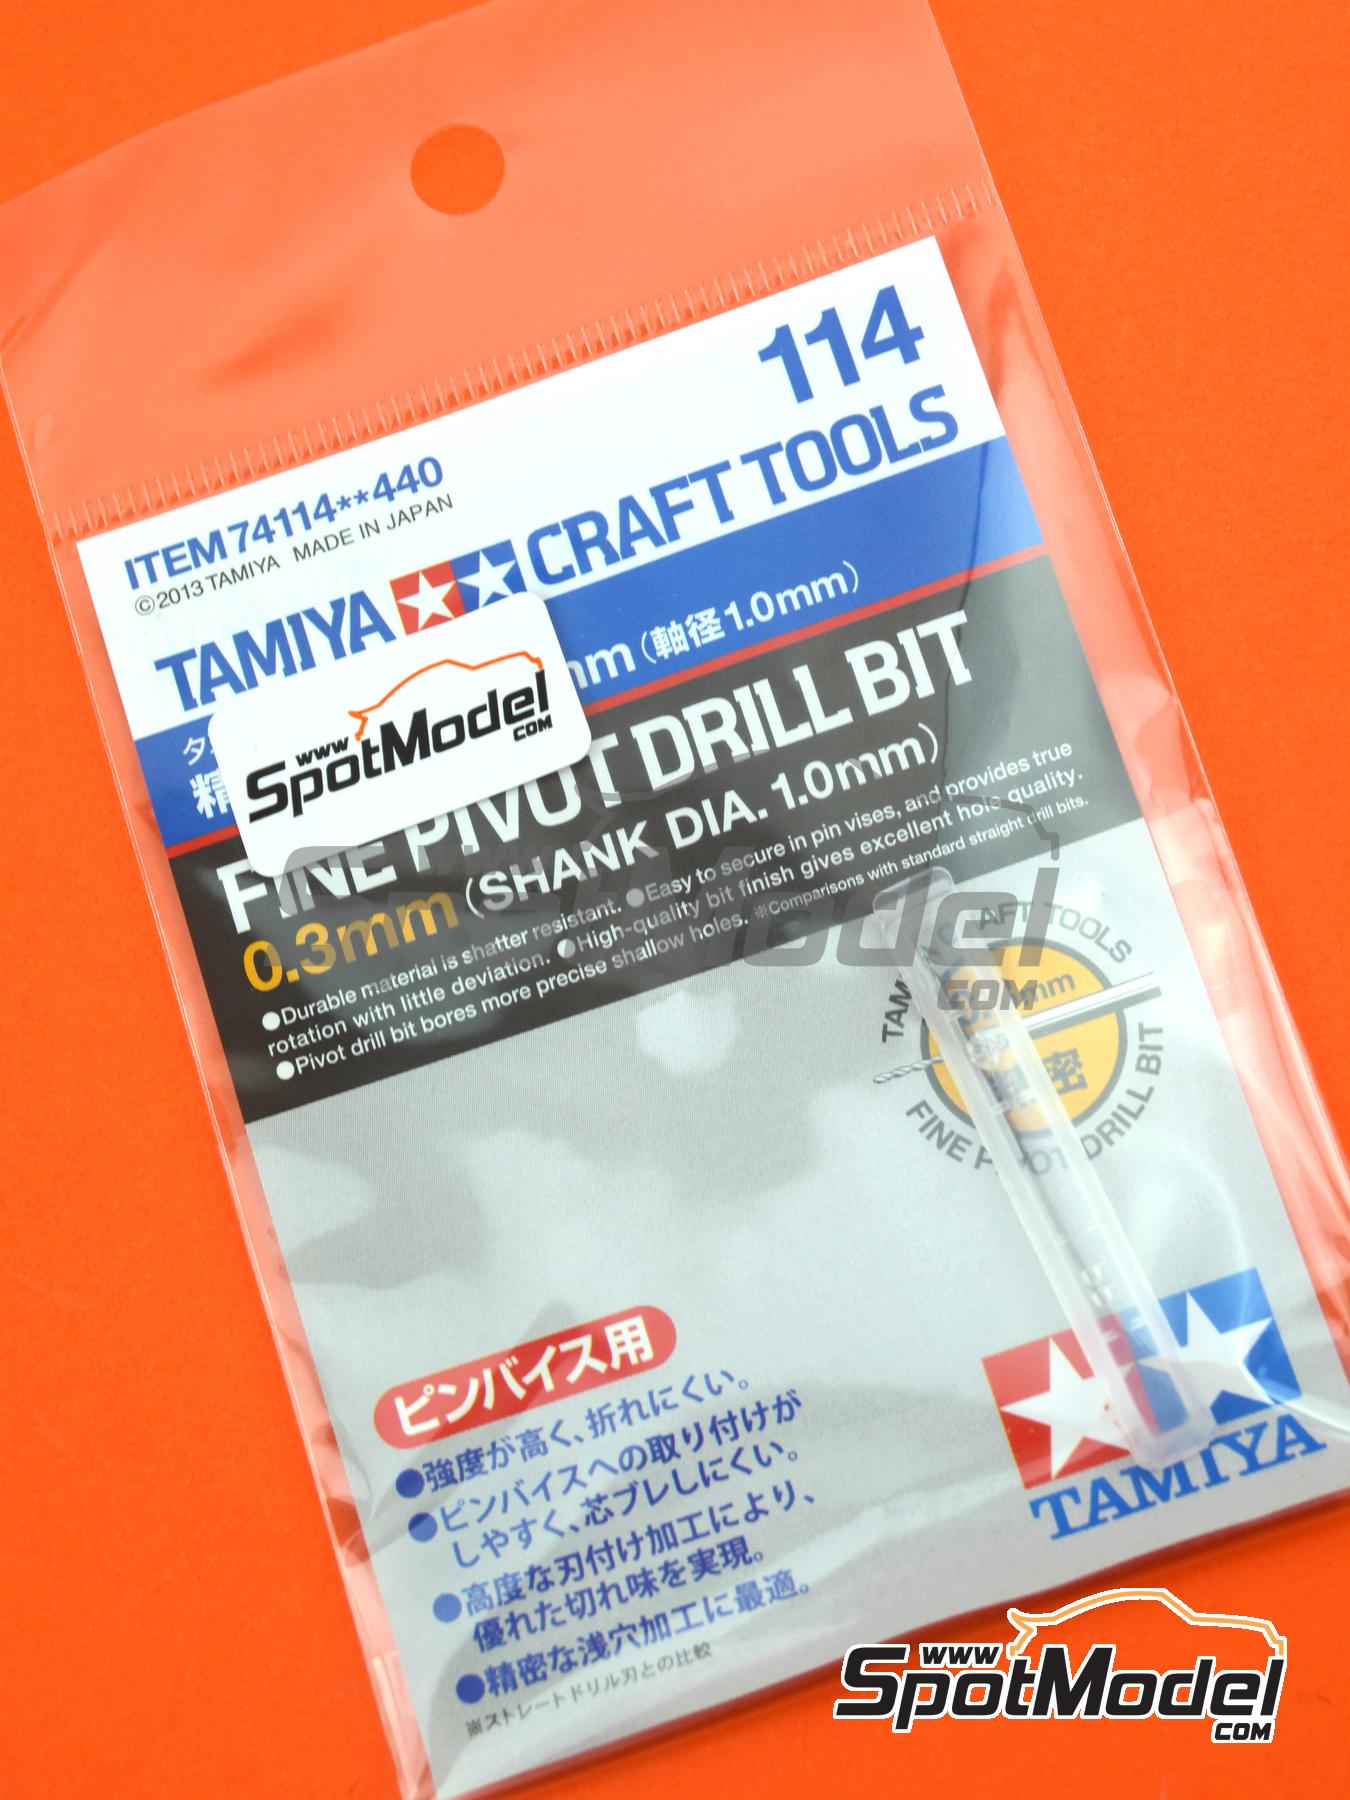 74114 Shank Dia. 1.0mm Tamiya Model Craft Tools Fine Pivot Drill Bit 0.3mm 